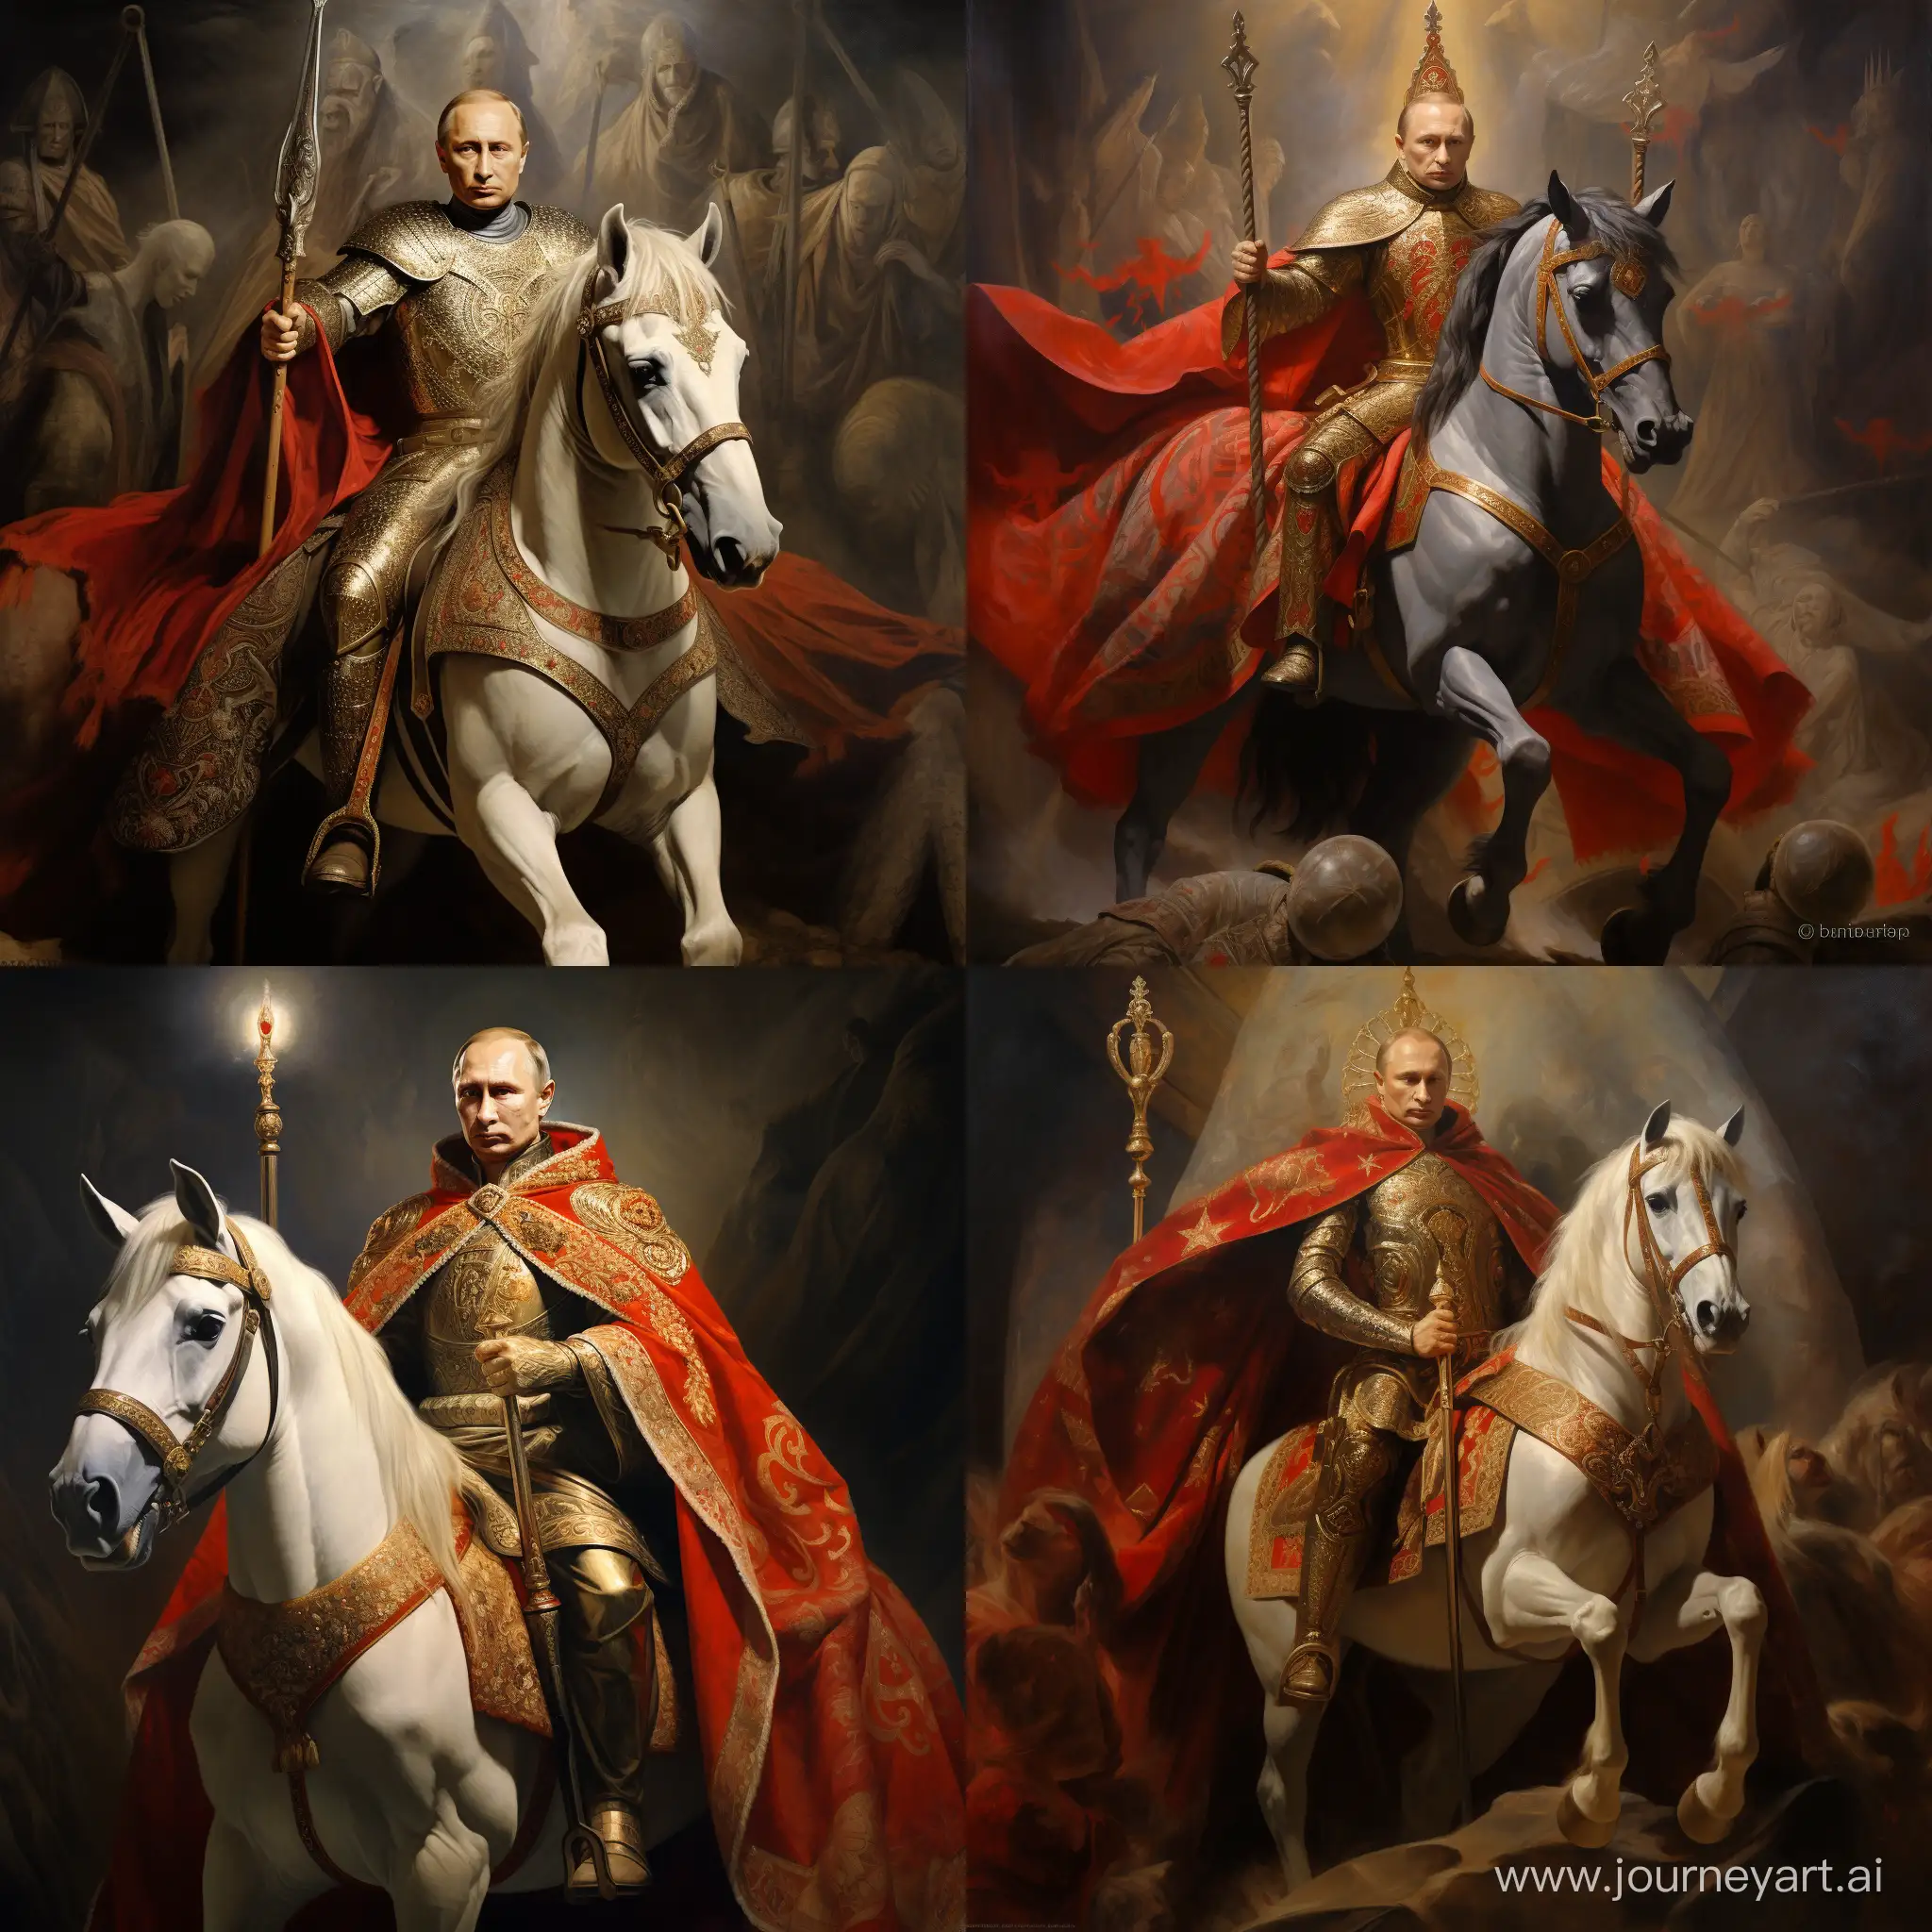 Vladimir-Putin-on-Crusader-Horse-Wearing-Kings-Robes-and-Crown